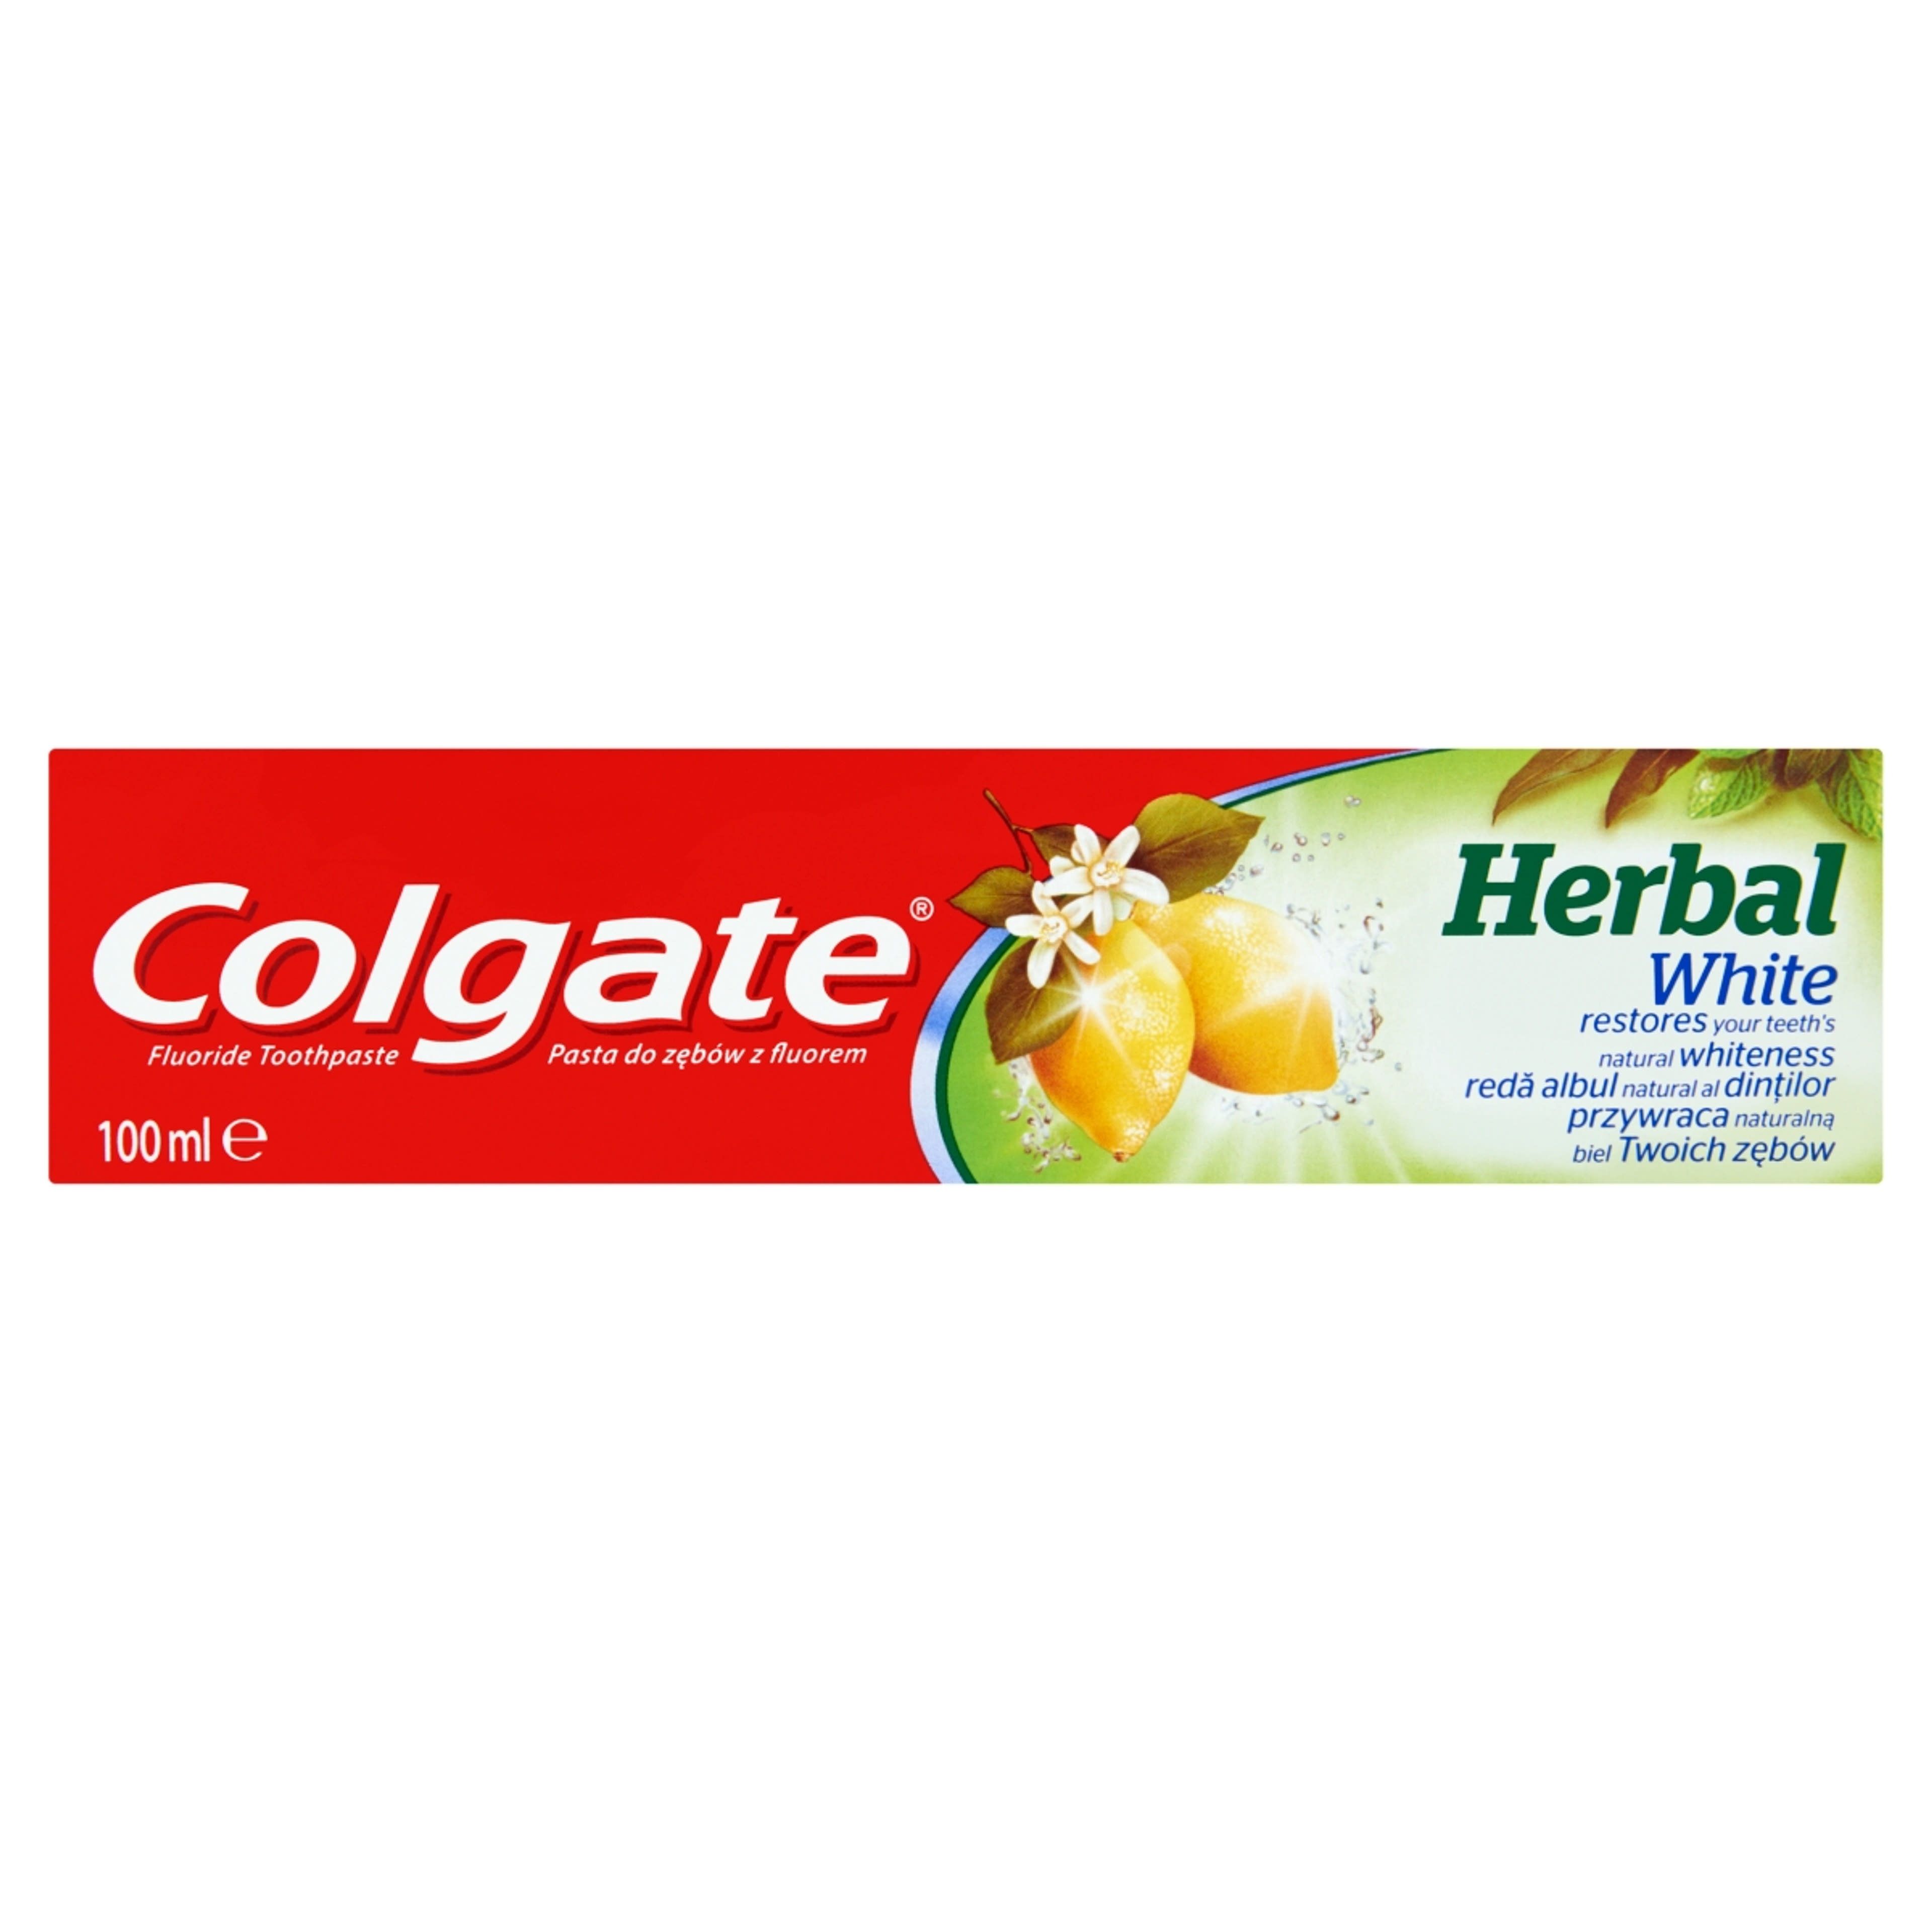 Colgate Herbal White fogkrém - 100 ml-1